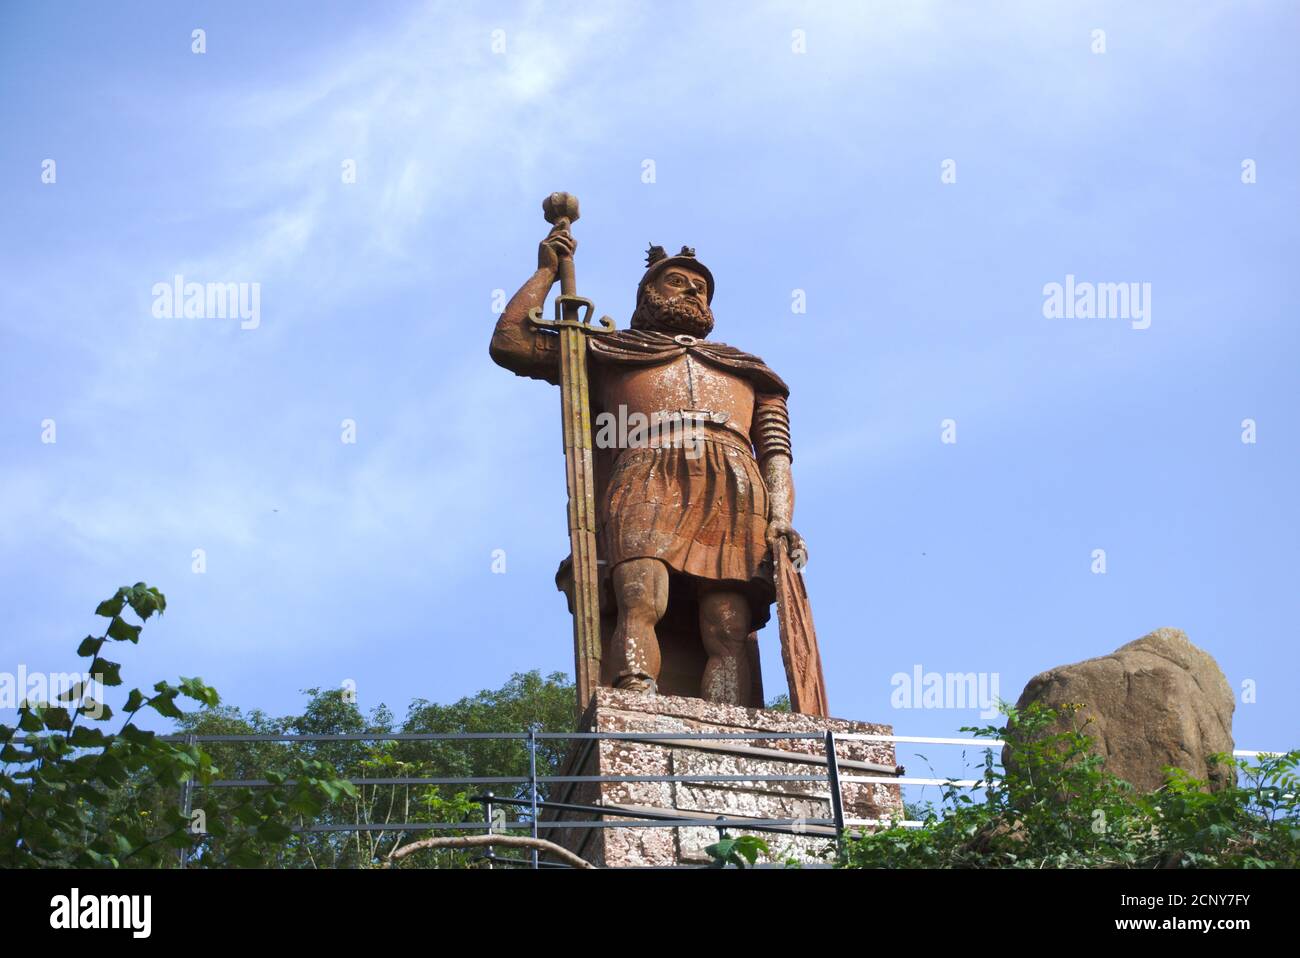 Statue de William Wallace en pierre rouge commandée par David Steuart Erskine, 11ème comte de Buchan et debout sur le domaine de Bemersyde, frontières écossaises. Banque D'Images